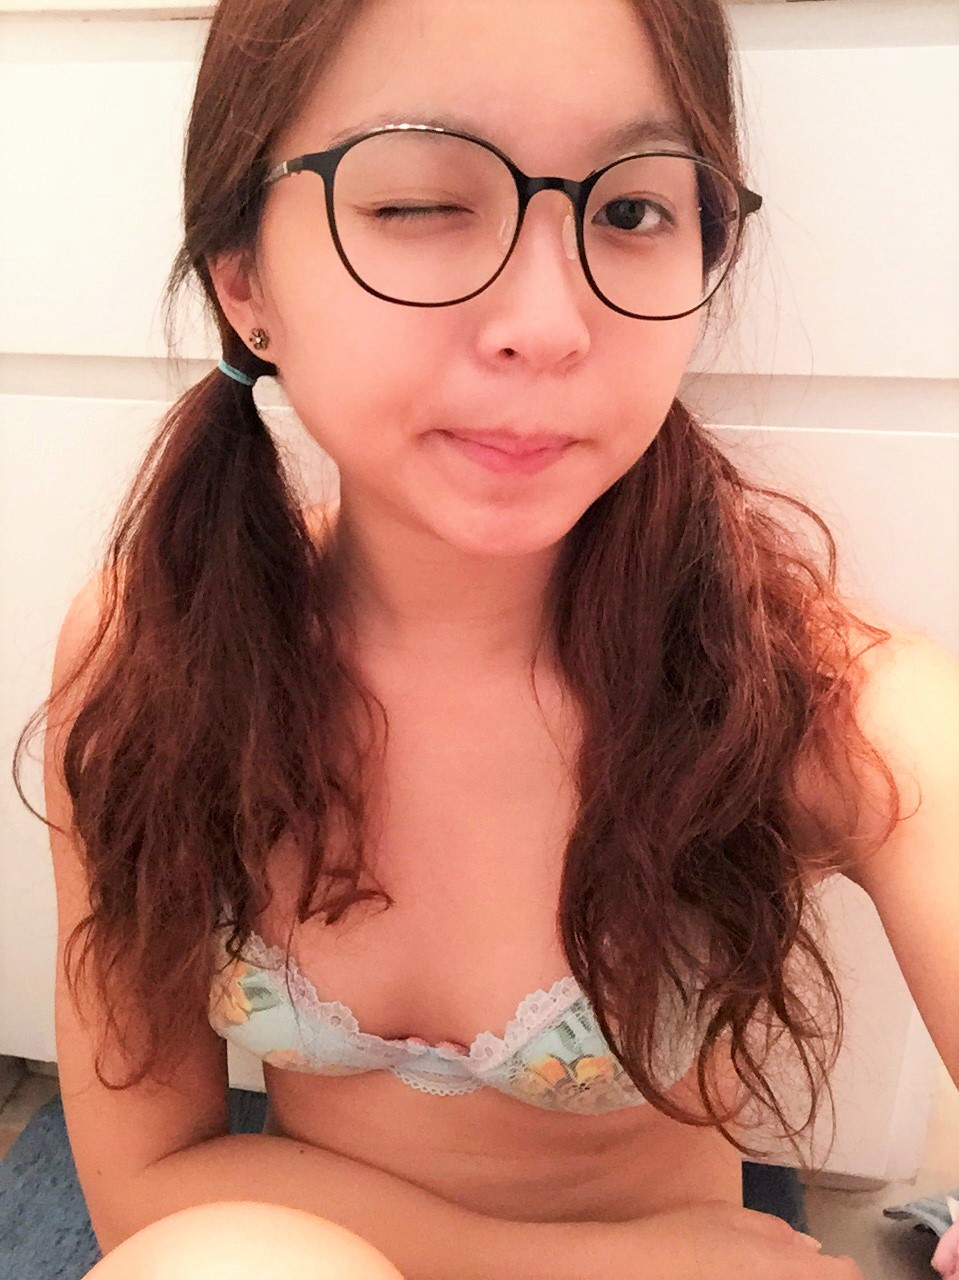 Petite Asian Teen Takes Nude Selfies - HT4jtBT Porn